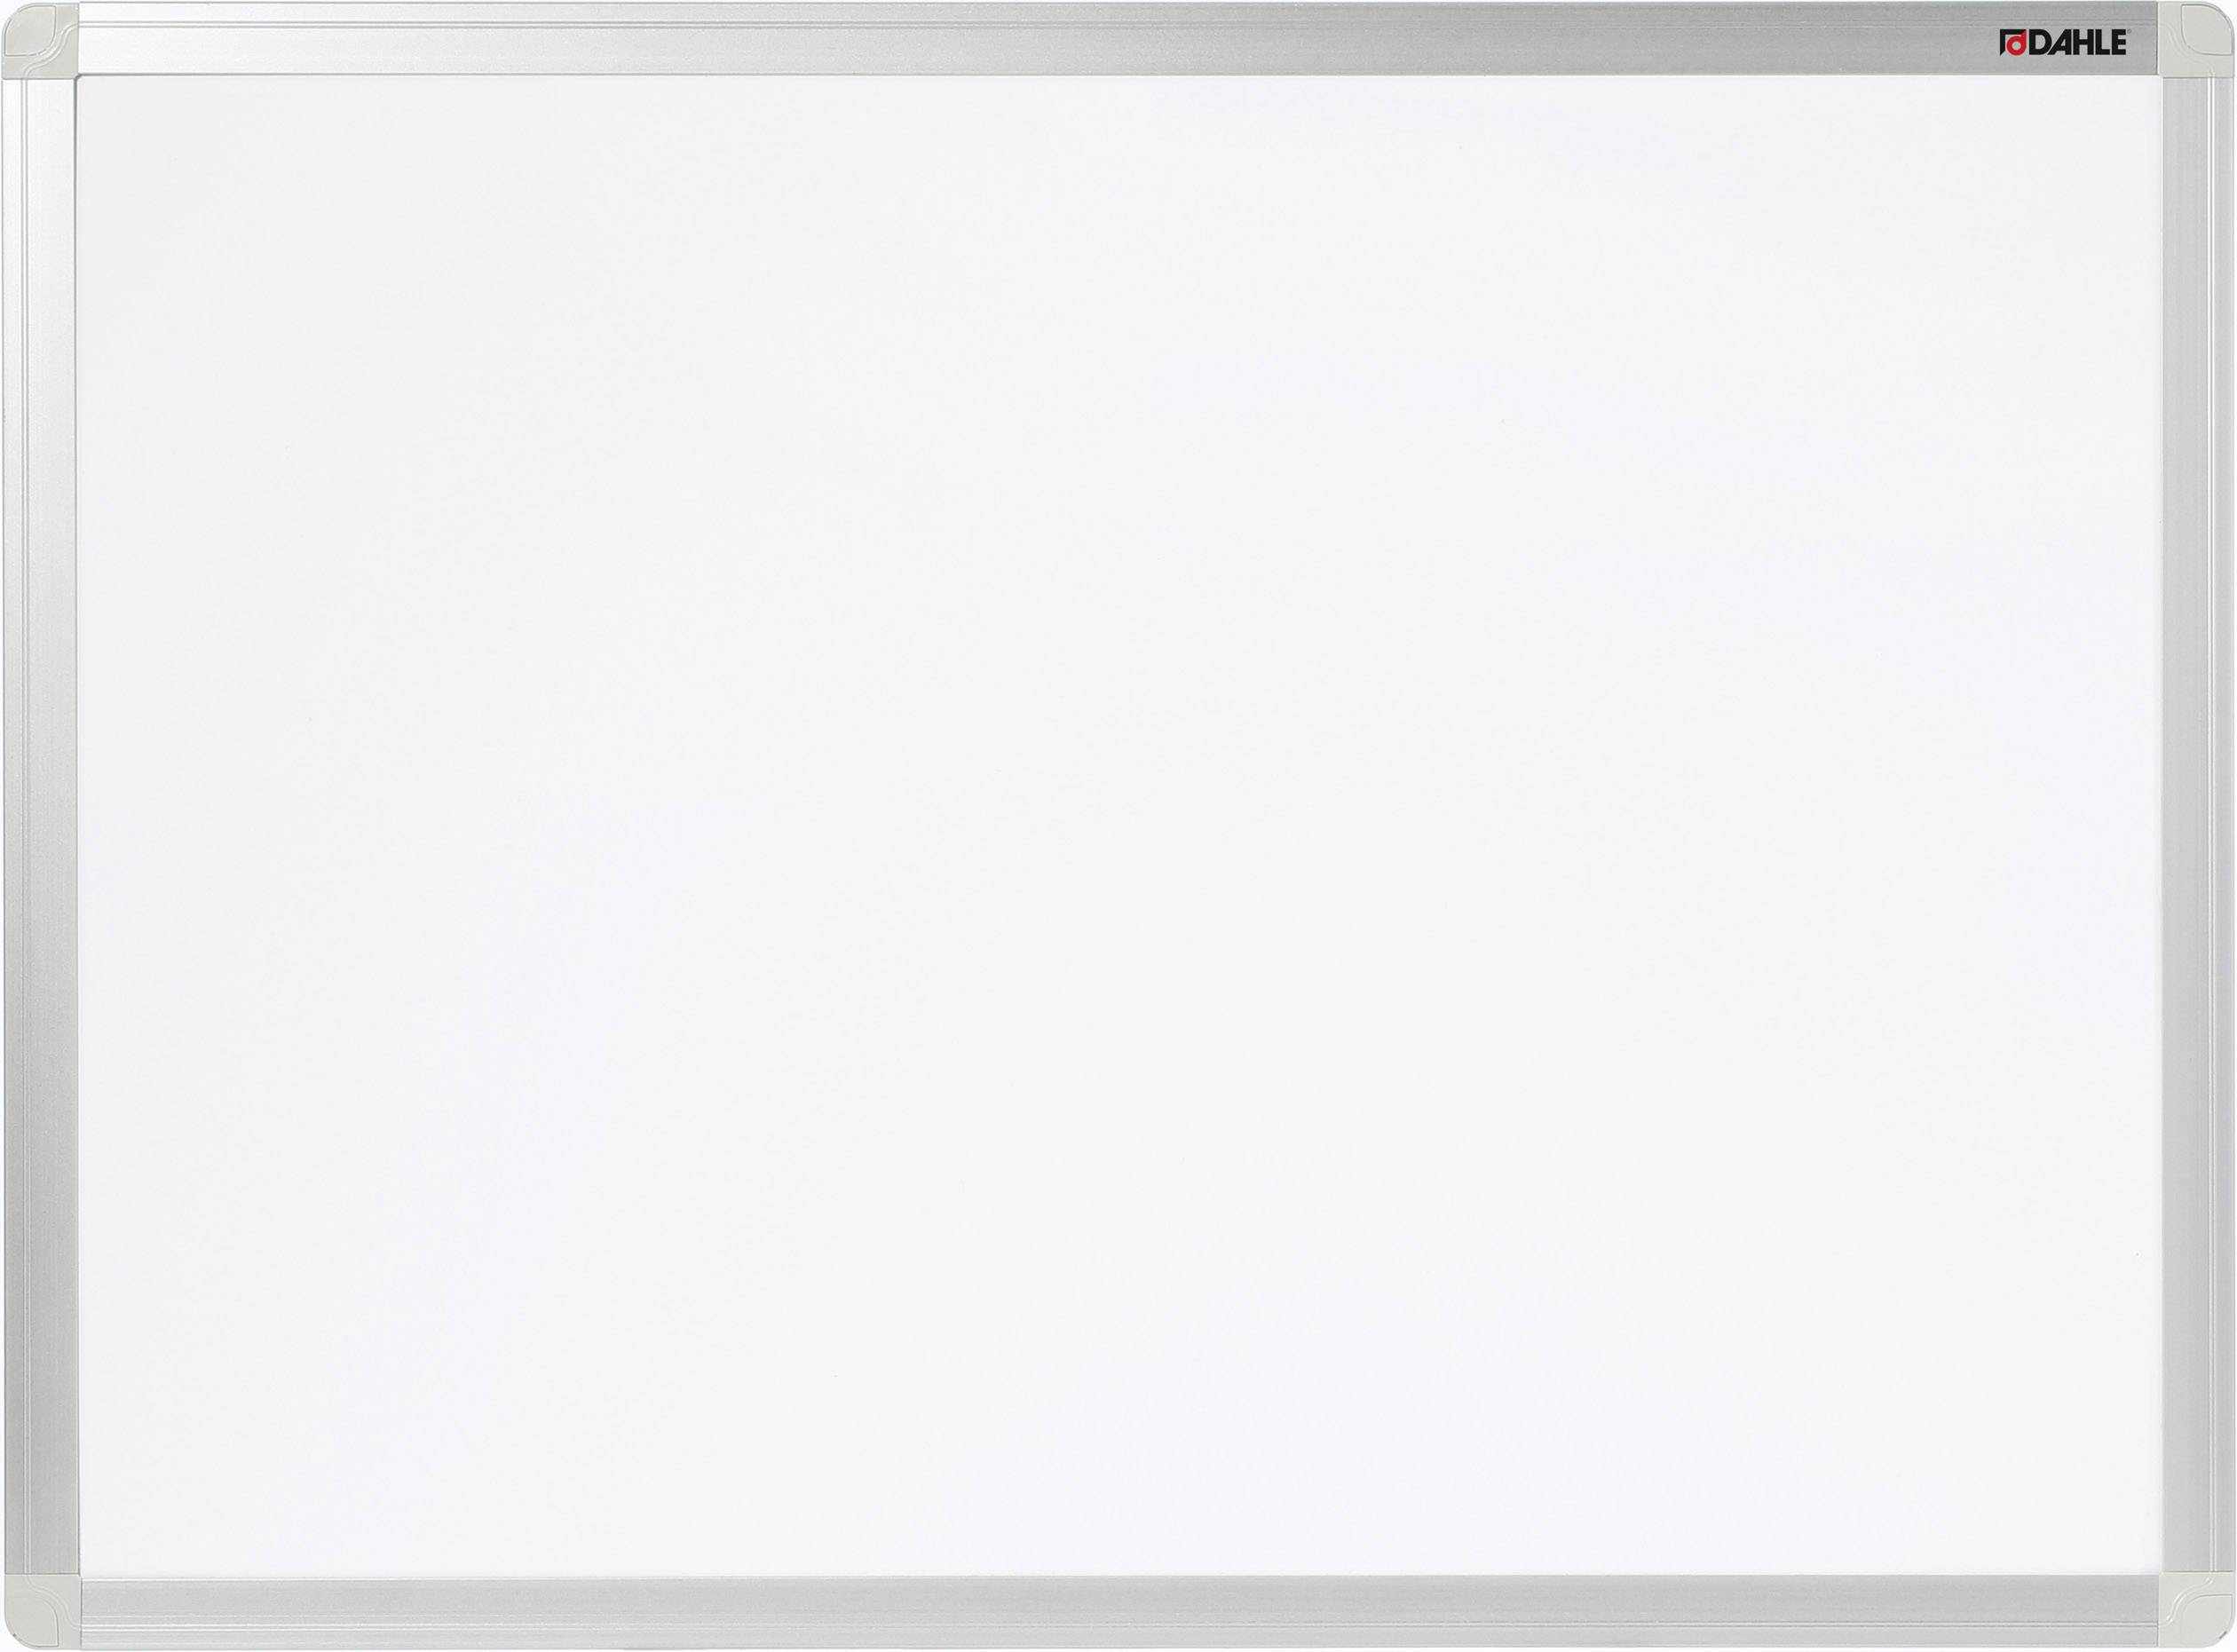 NOVUS Dahle Whiteboard Basic Board 96152 (B x H) 120 cm x 90 cm Weiß